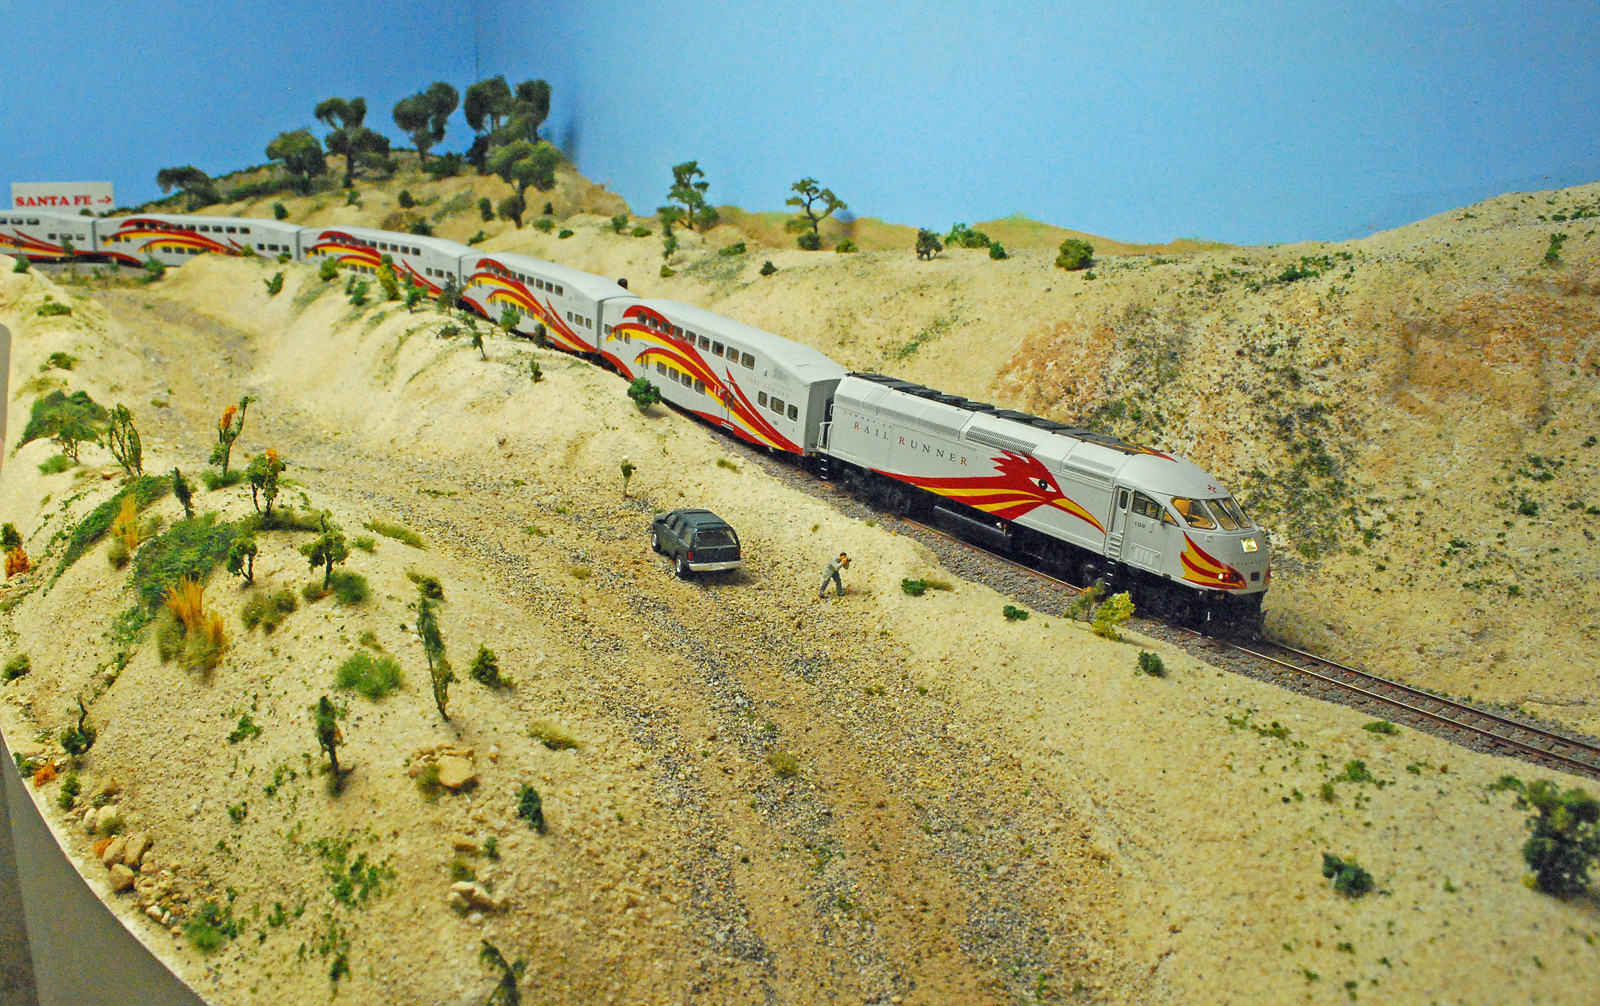 Railrunner in high desert